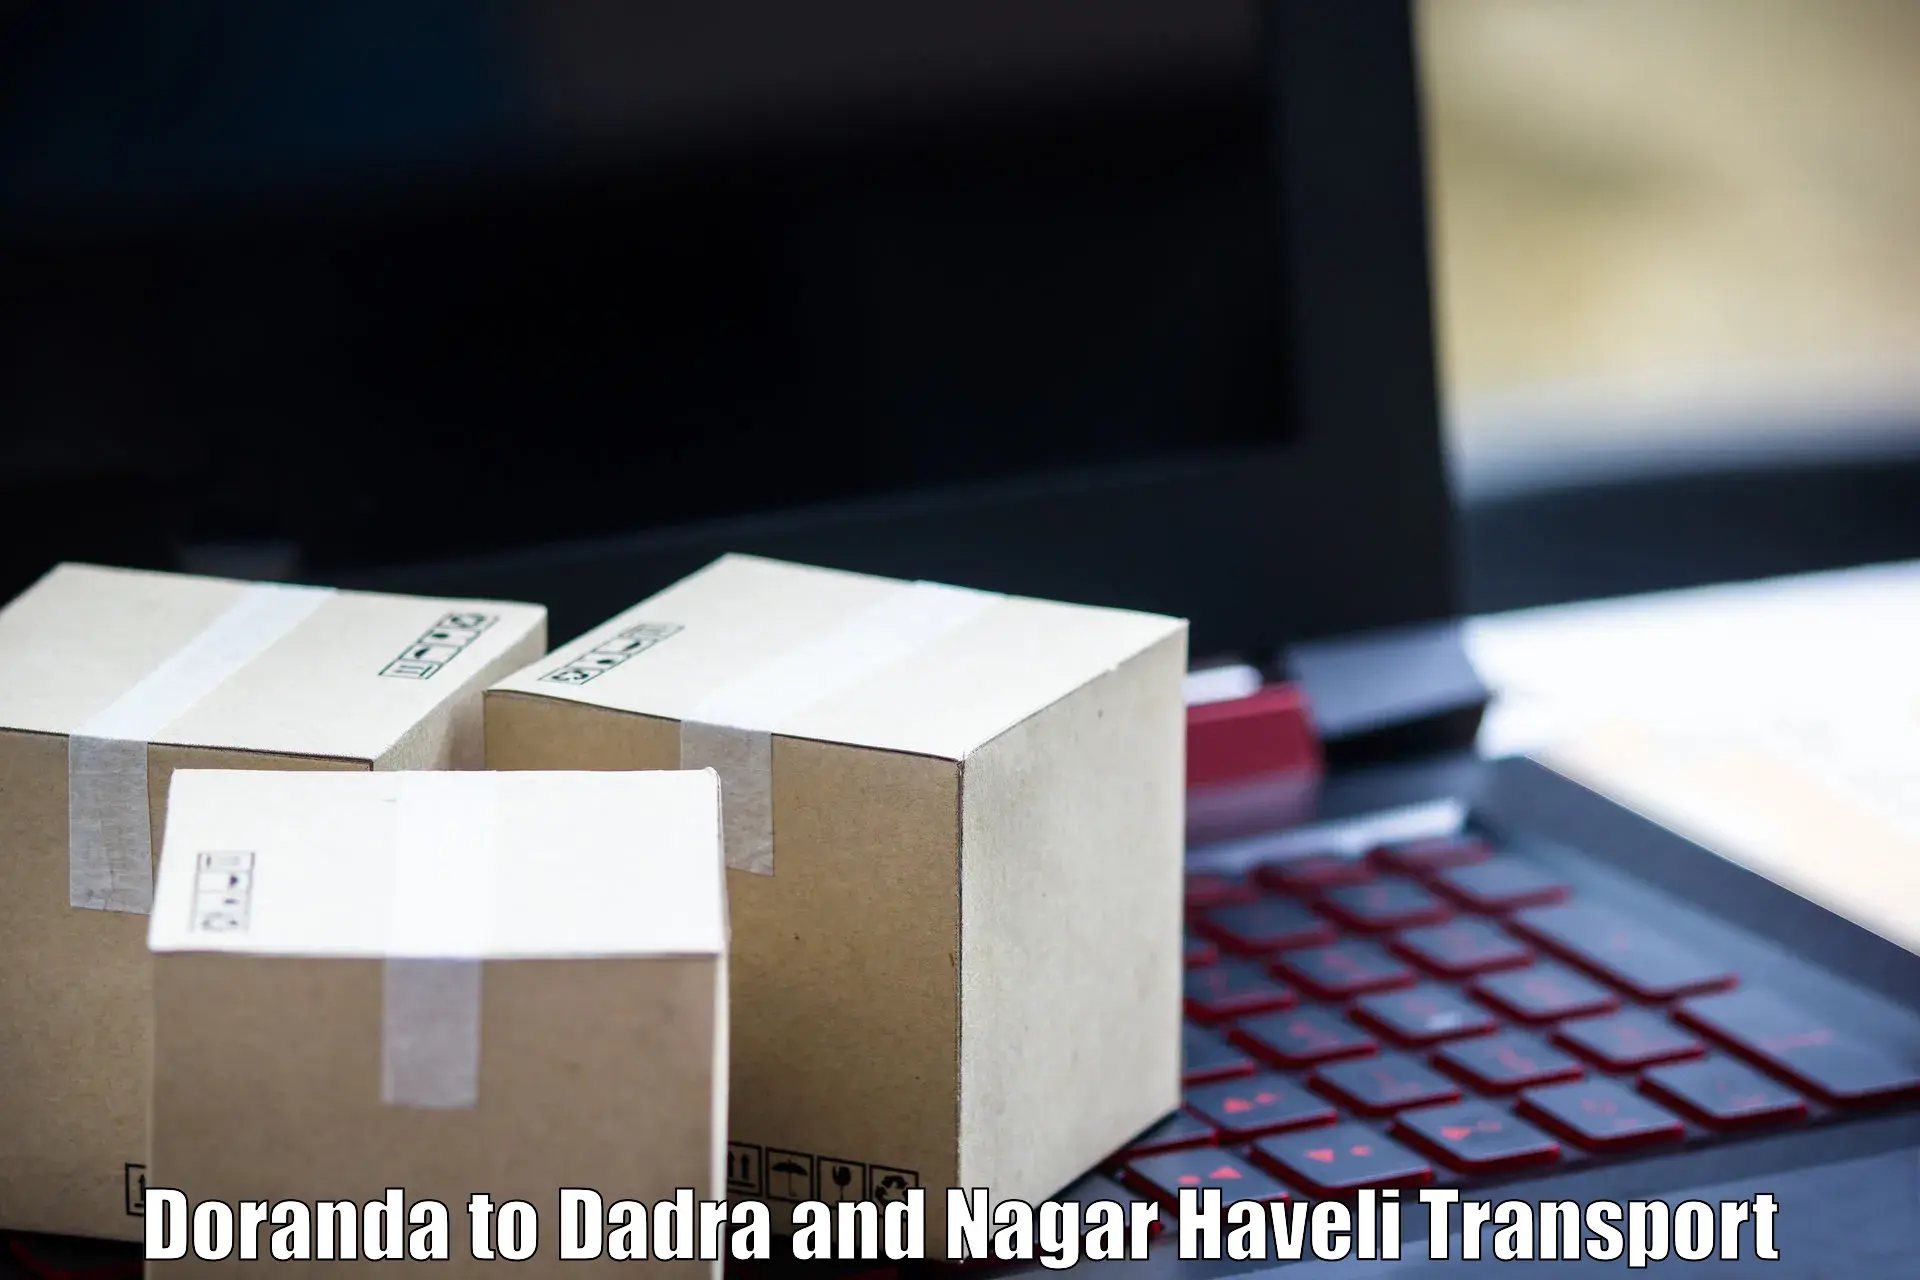 Air cargo transport services Doranda to Dadra and Nagar Haveli